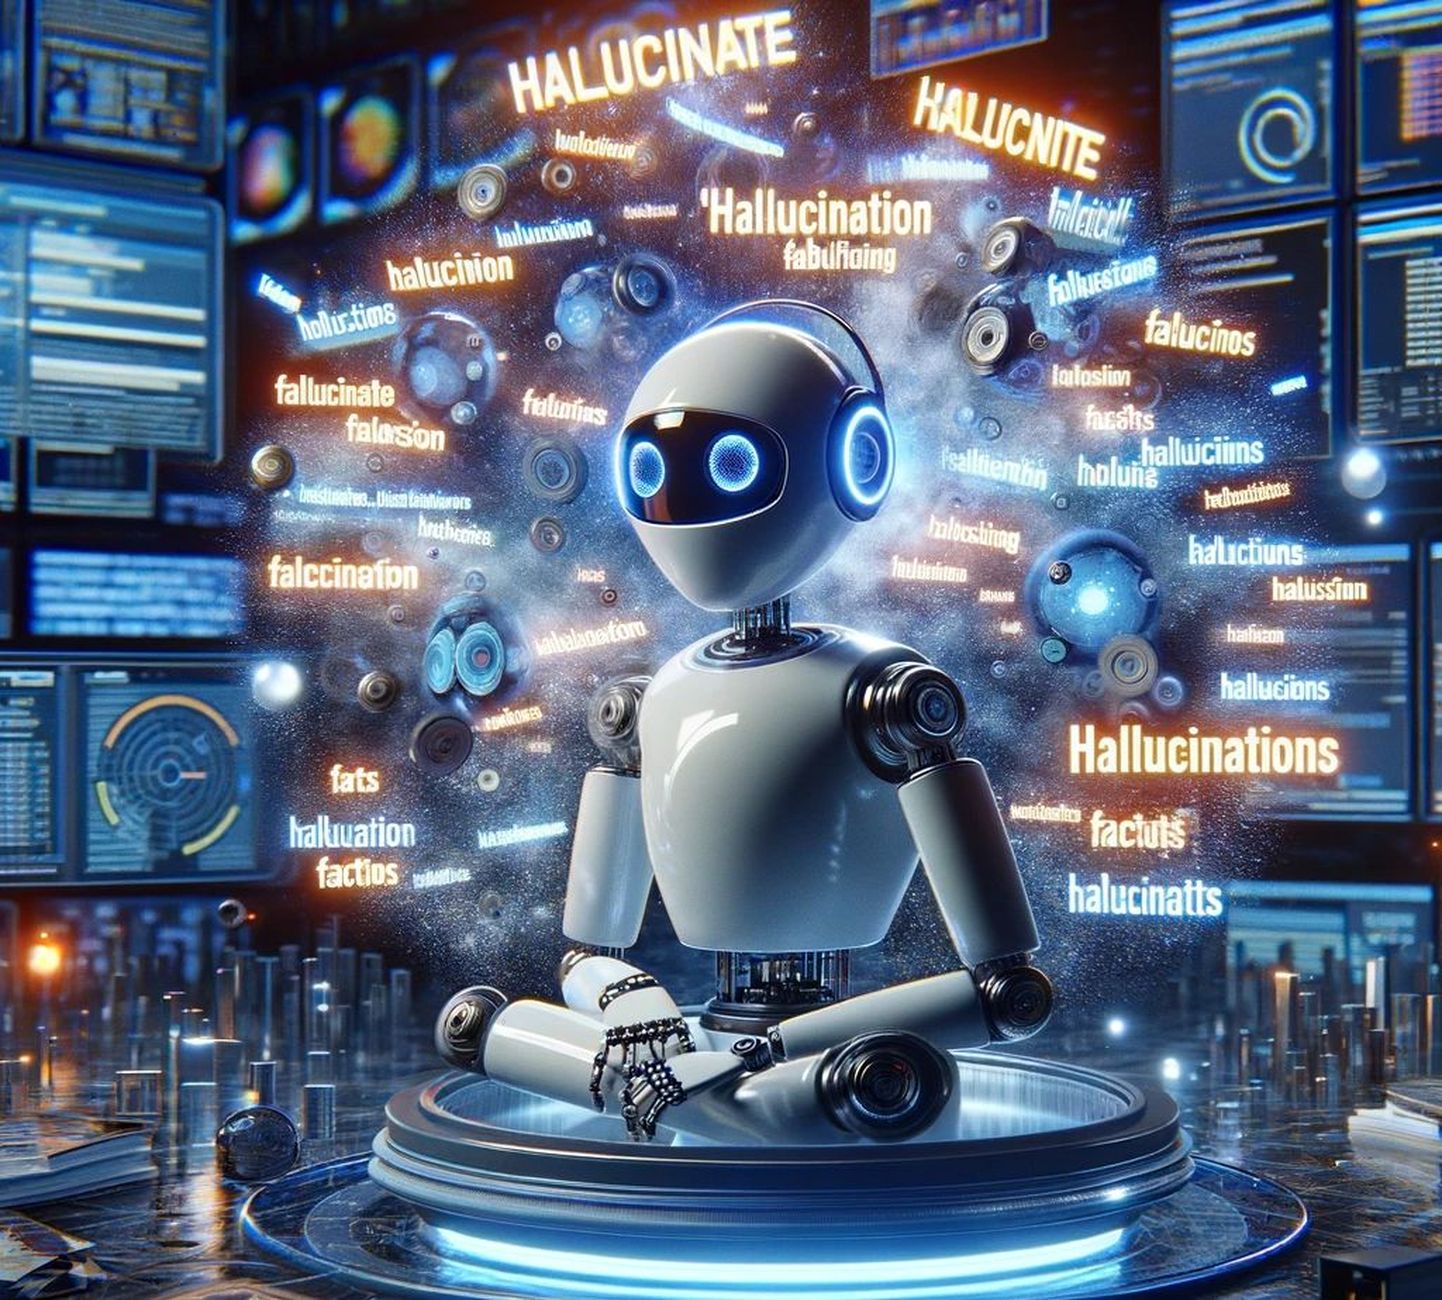 Tehisintellektiga pildigeneraator Dall-E 3 joonistas pildi aasta sõnast Hallucinate. See sõna iseloomustab tehisintellektide probleemi fakte välja mõelda ja neid usutavalt esitada ja kerkis esile just 2023. aastal.